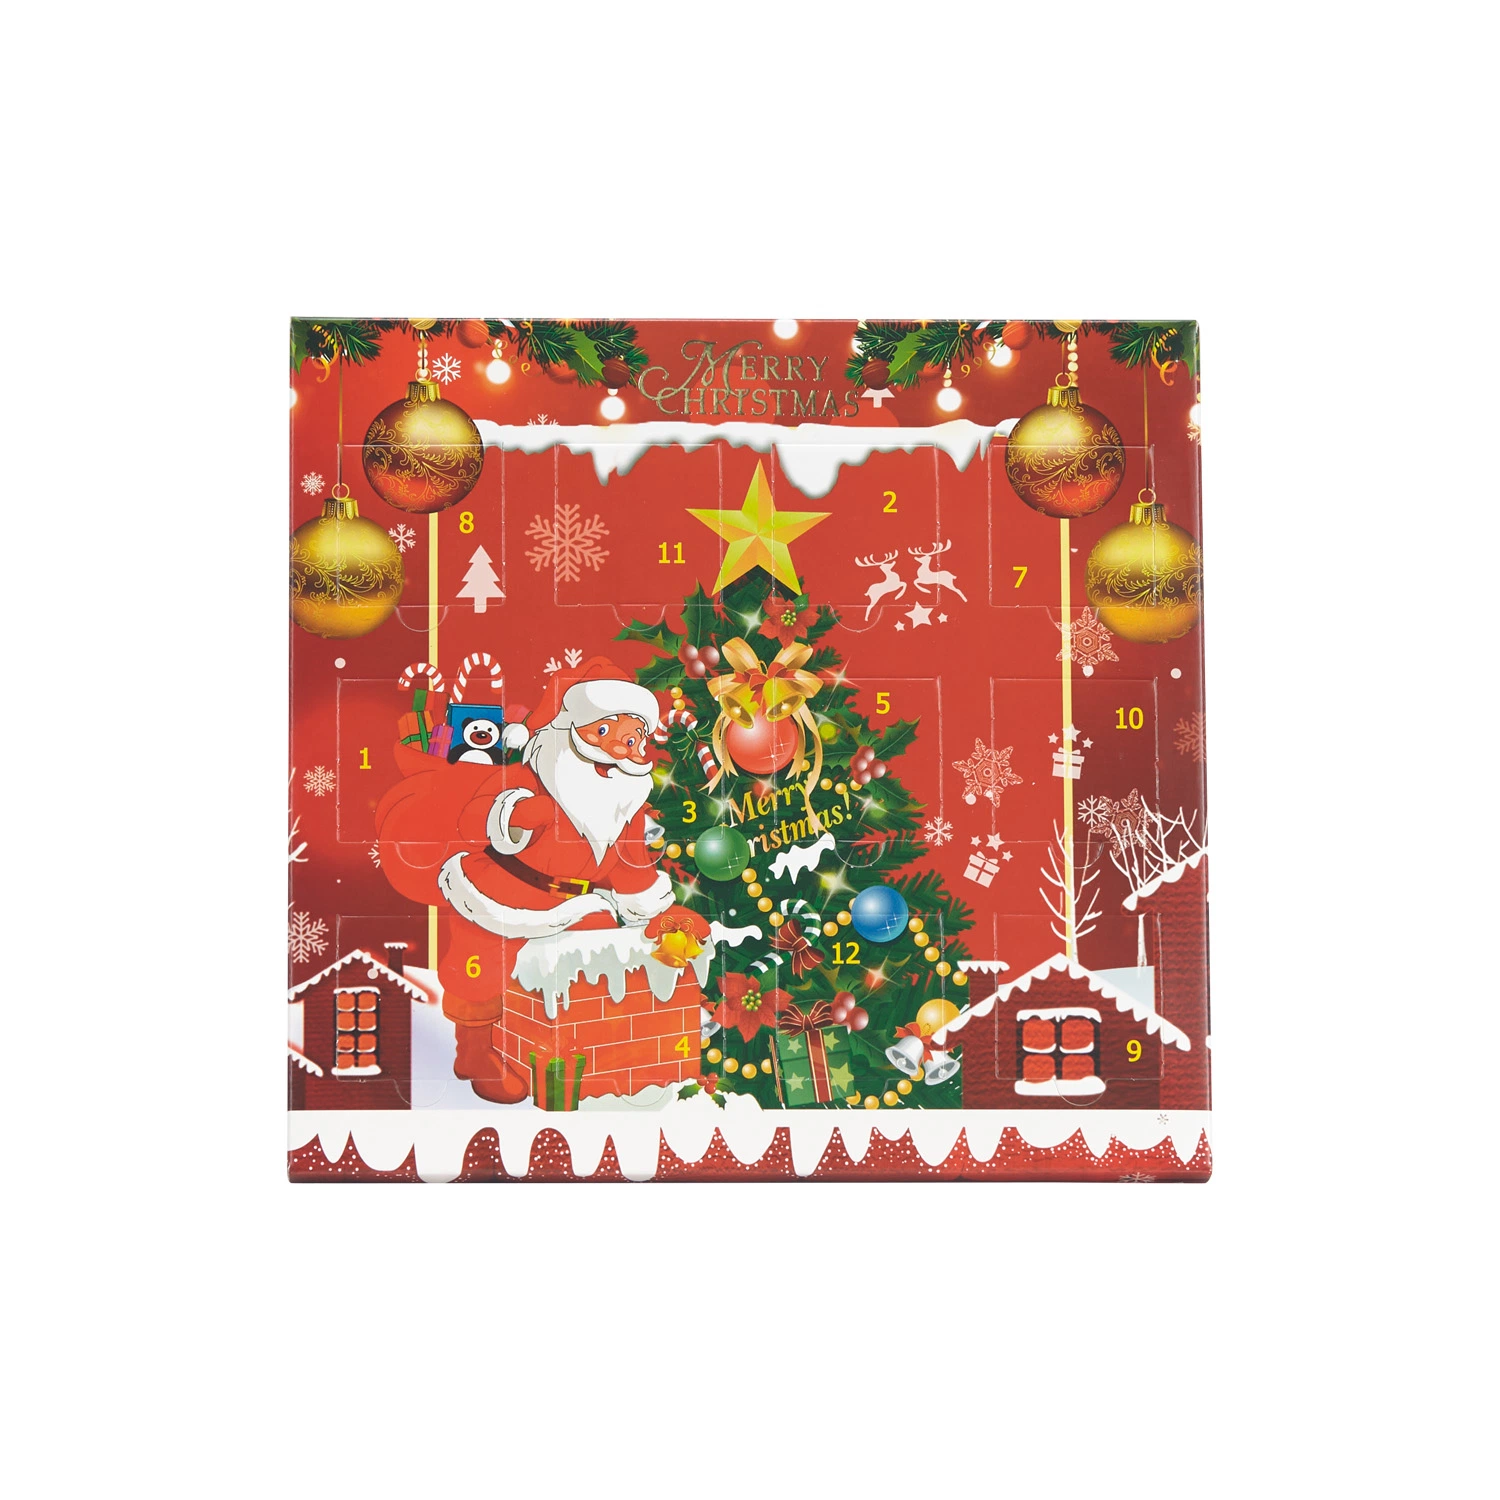 China Großhandel Custom Design Papier Verpackung Boxen Lebensmittelqualität Schokolade Geschenk Weihnachtsgeschenk 12 Tage Weihnachten Zählen Ramadan Adventskalender Blindbox